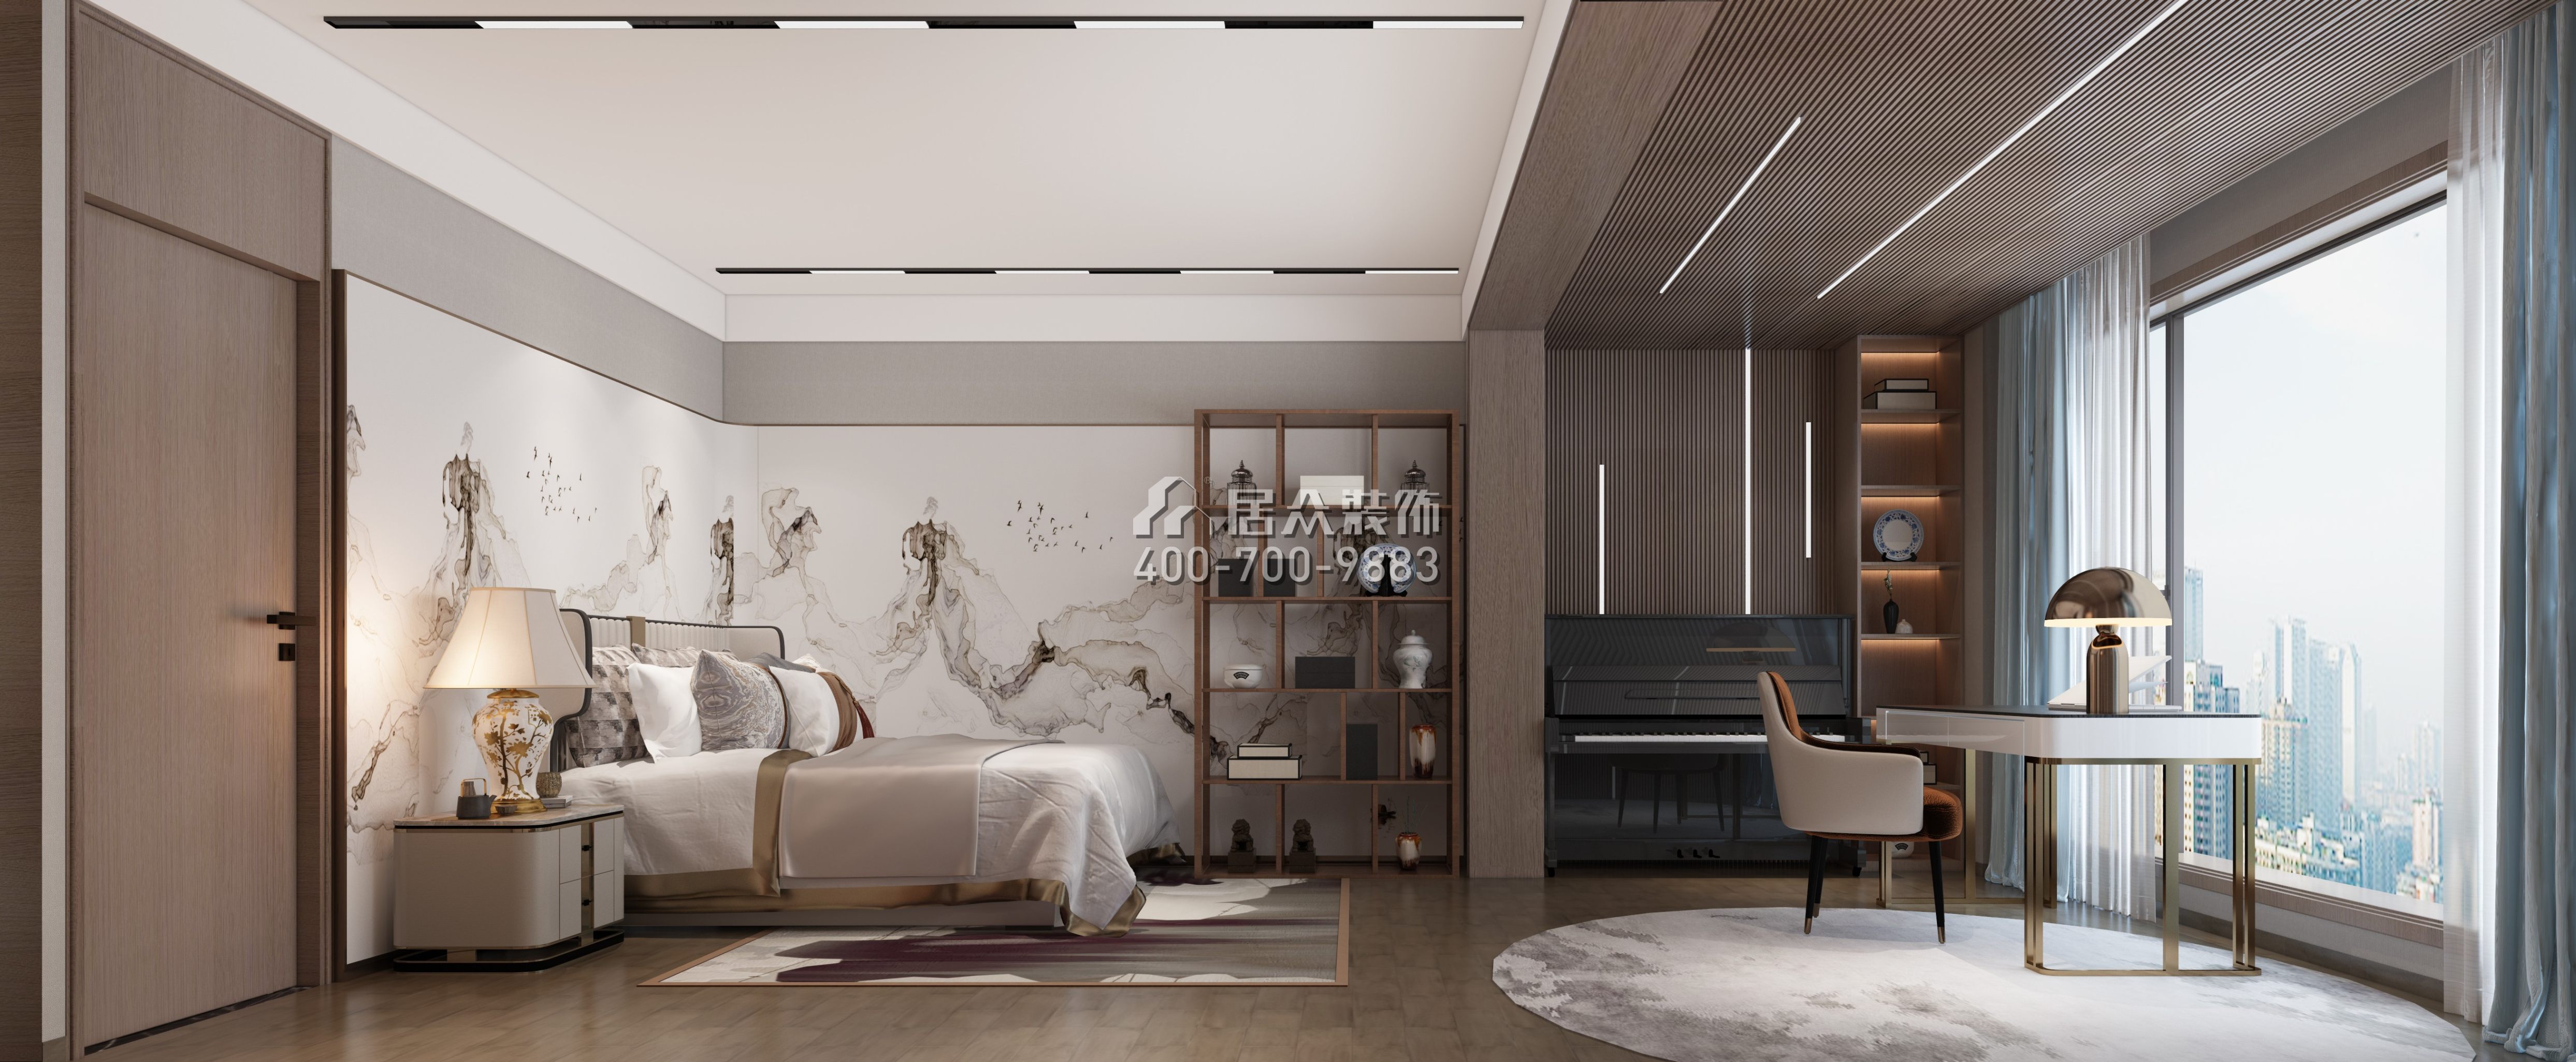 万科金域华府189平方米中式风格平层户型卧室书房一体装修效果图